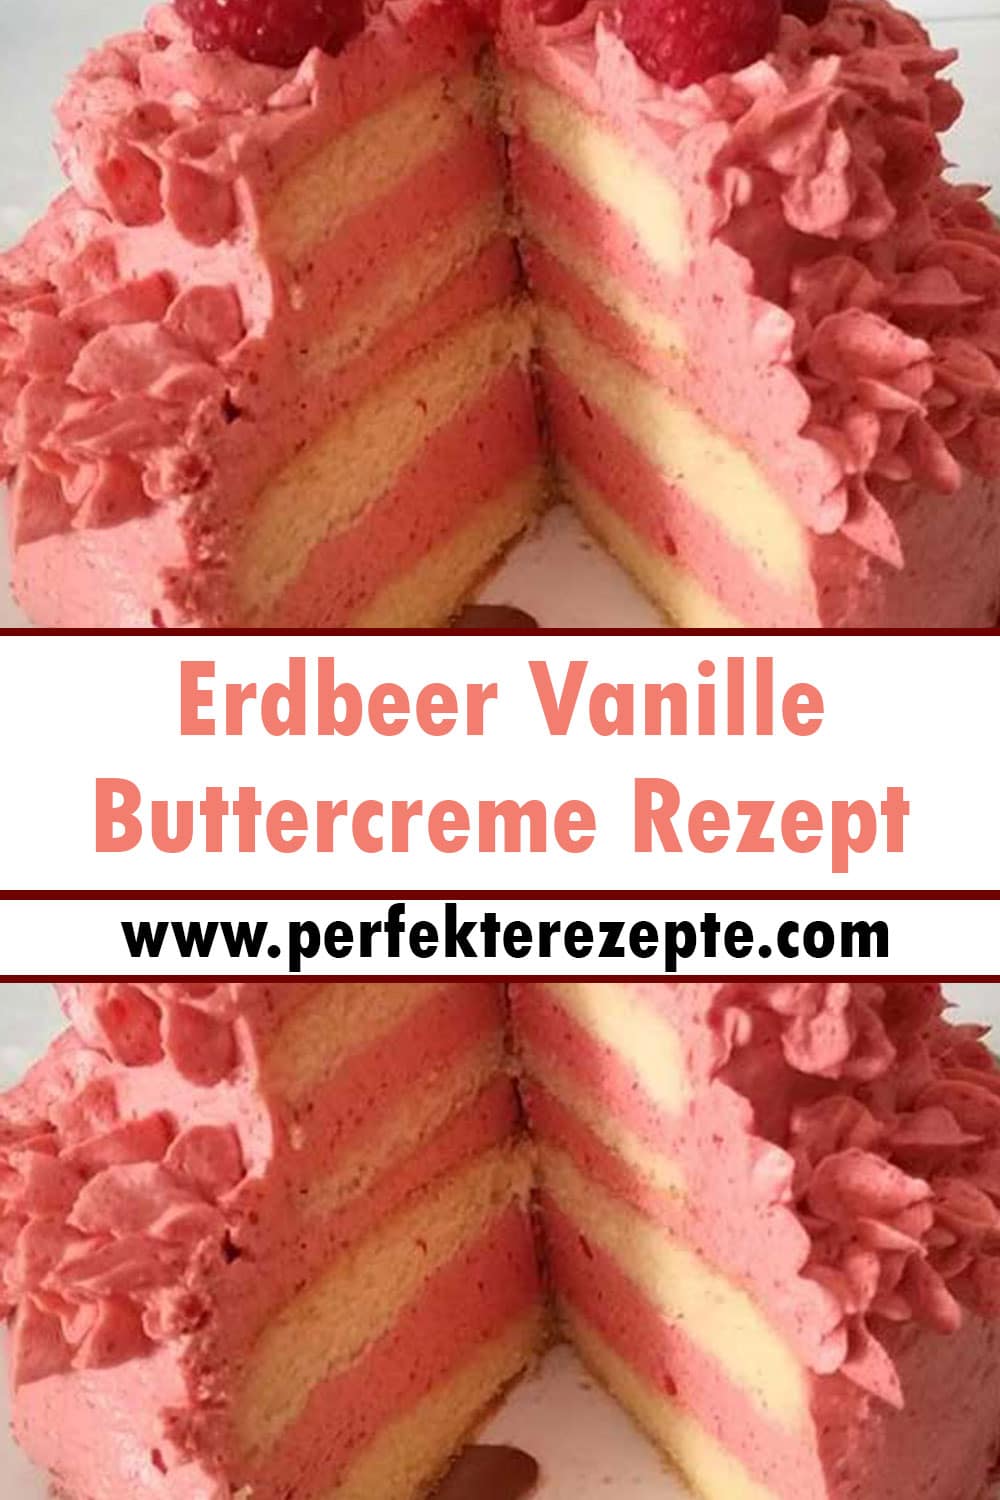 Erdbeer Vanille Buttercreme Rezept